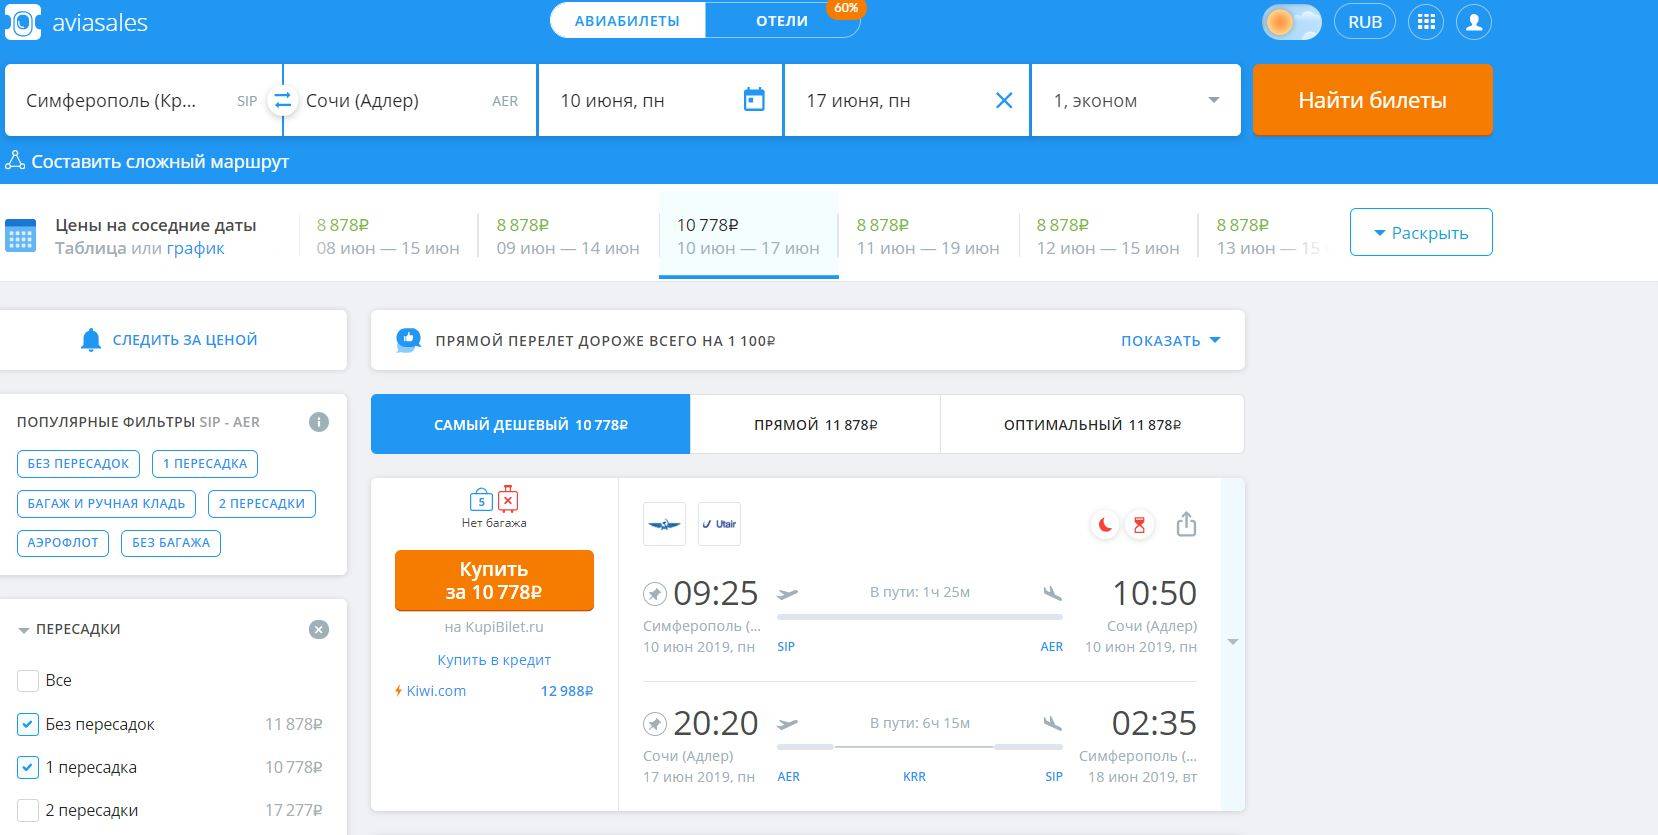 Дешевые авиабилеты купить через самолет кызыл красноярск цена билета расписание